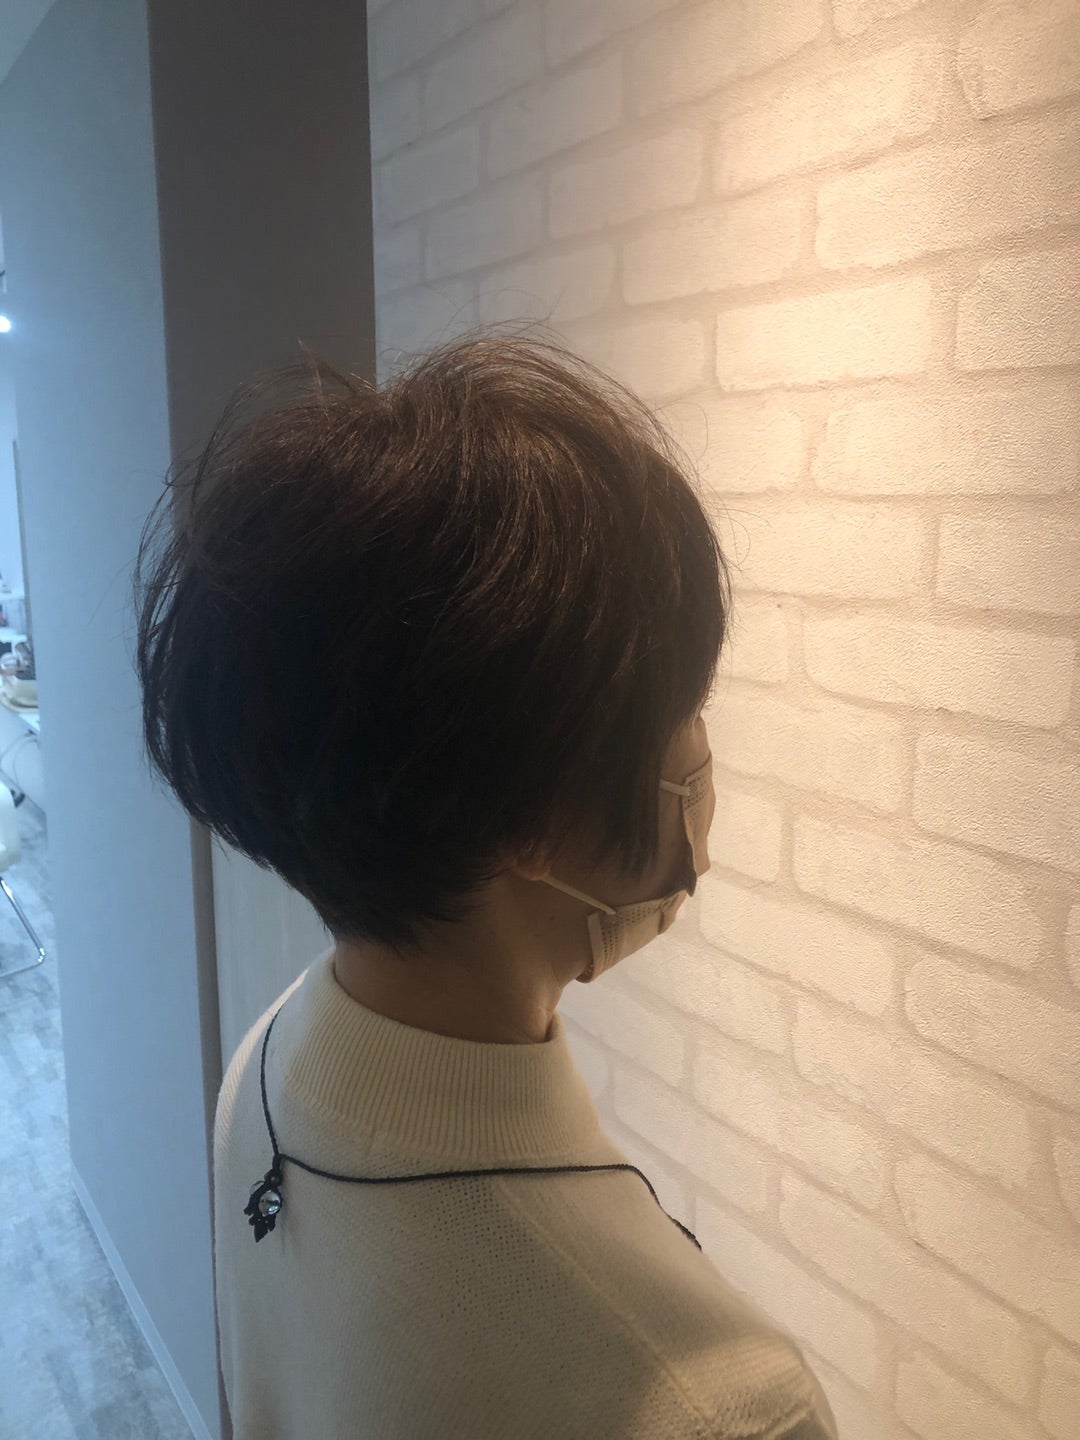 髪型・大人のグラデーション系ショート。 40代50代京都四条烏丸大人のヘアデザインに特化美容師ヘアスタイル人気